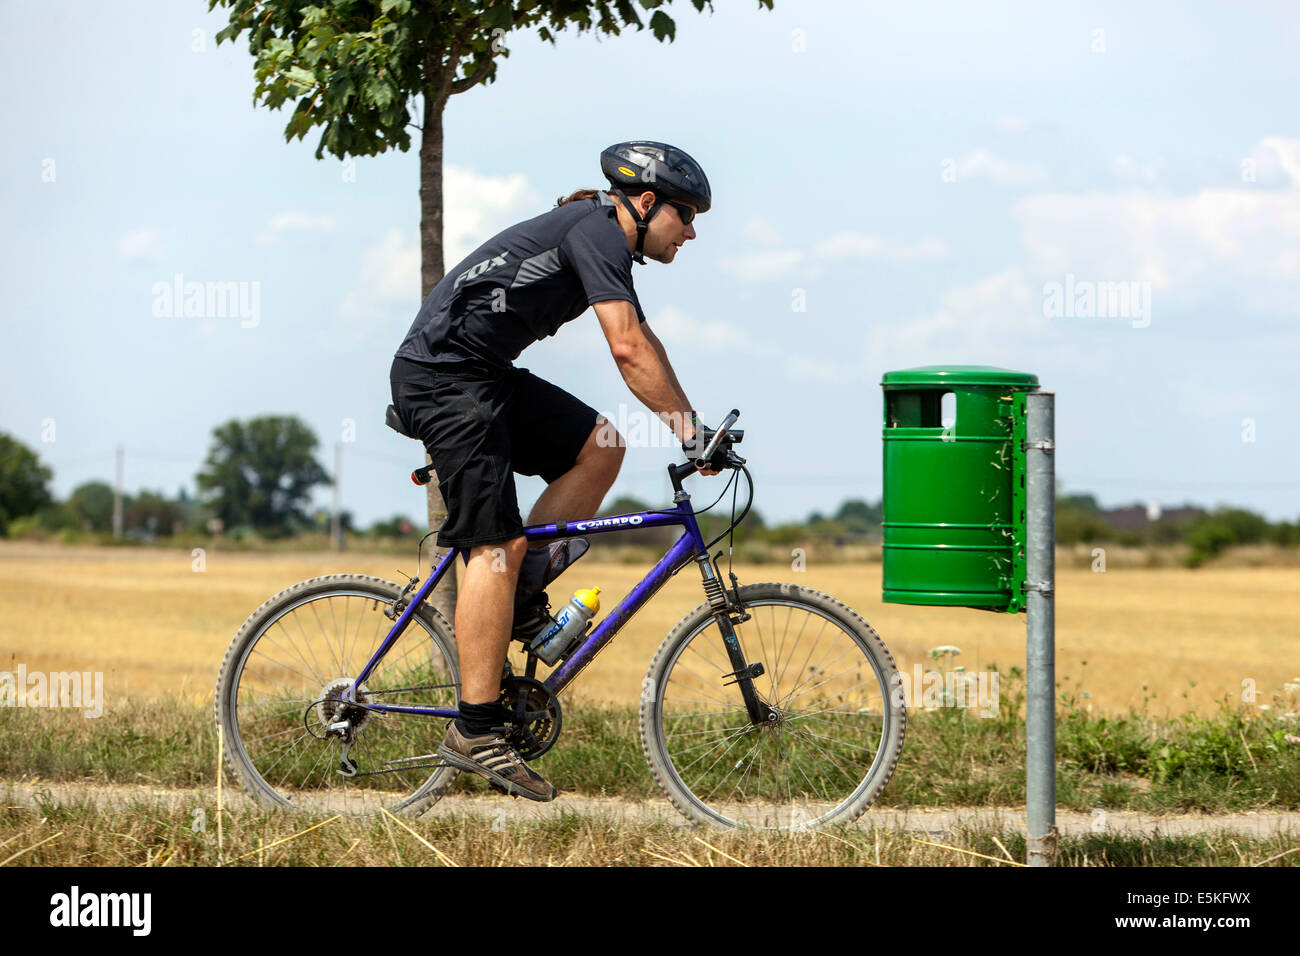 Allein Radfahren Radler auf dem Fahrrad, Radweg in der Sommerlandschaft, Abfalleimer, Tschechische Republik Lifestyle-Aktivität Stockfoto